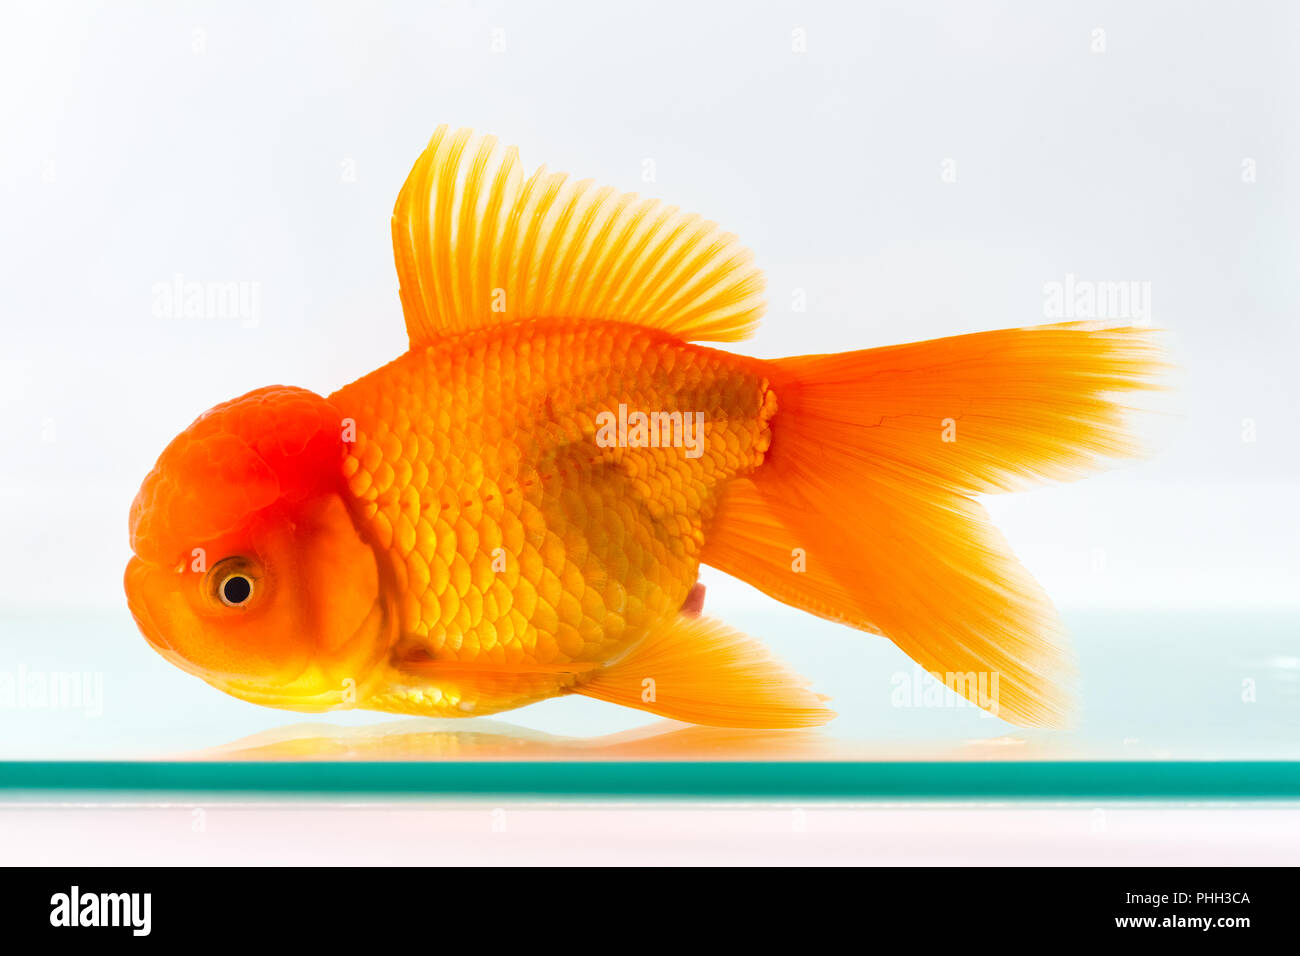 Goldfisch Glas Stockfotos und -bilder Kaufen - Alamy